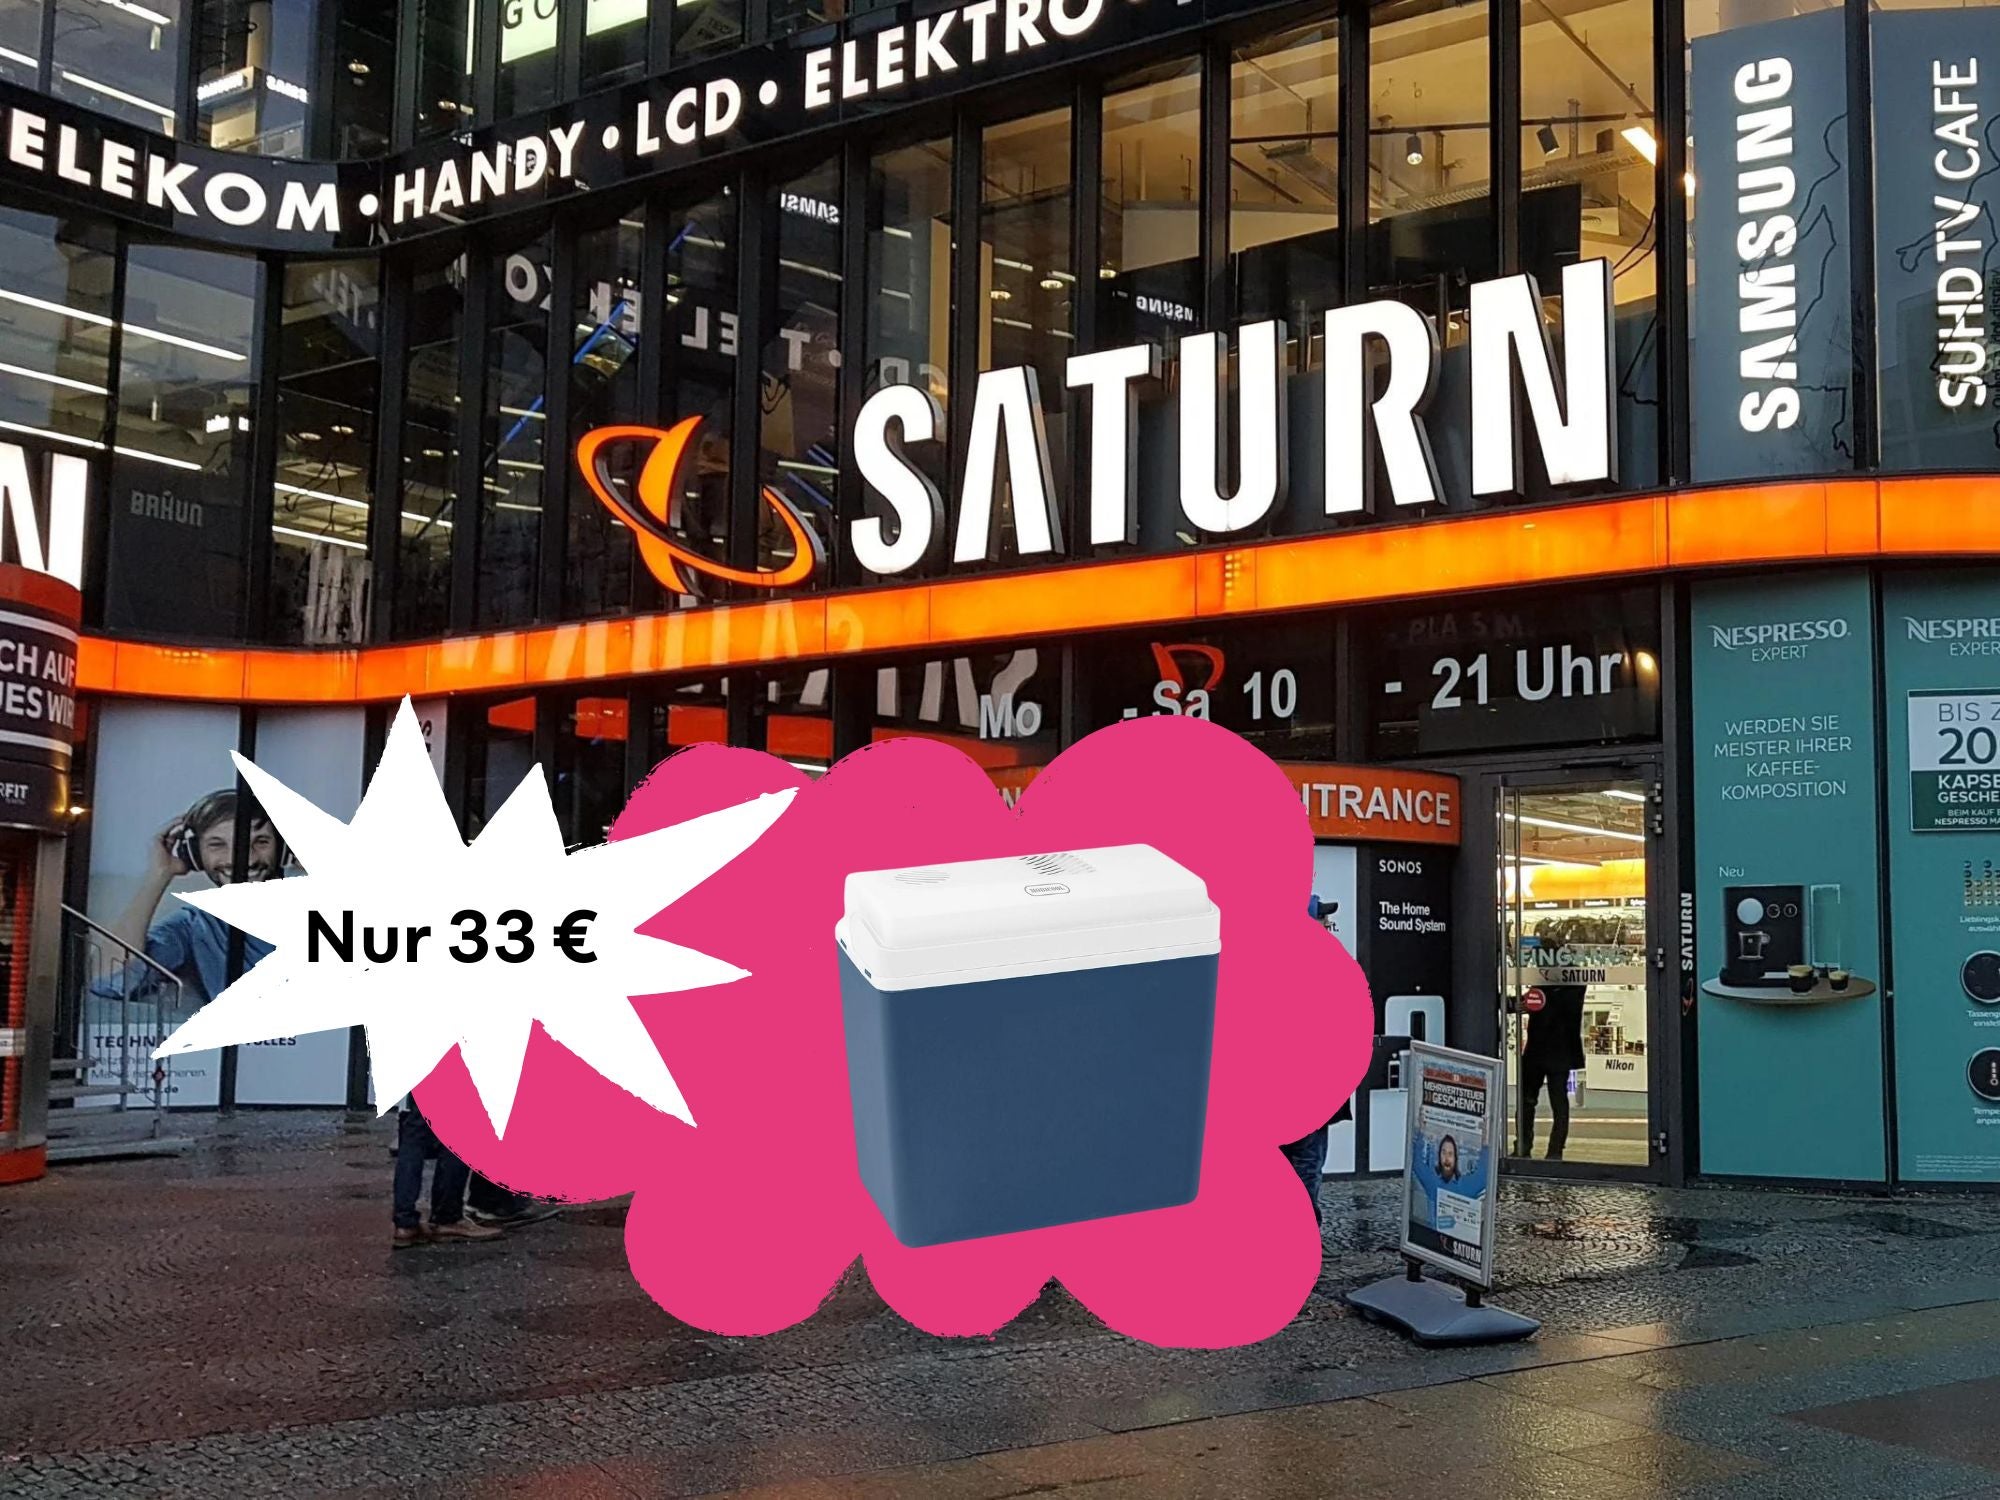 Schnäppchenpreis - Saturn will gerade nur 33 Euro für diese elektrische Kühlbox